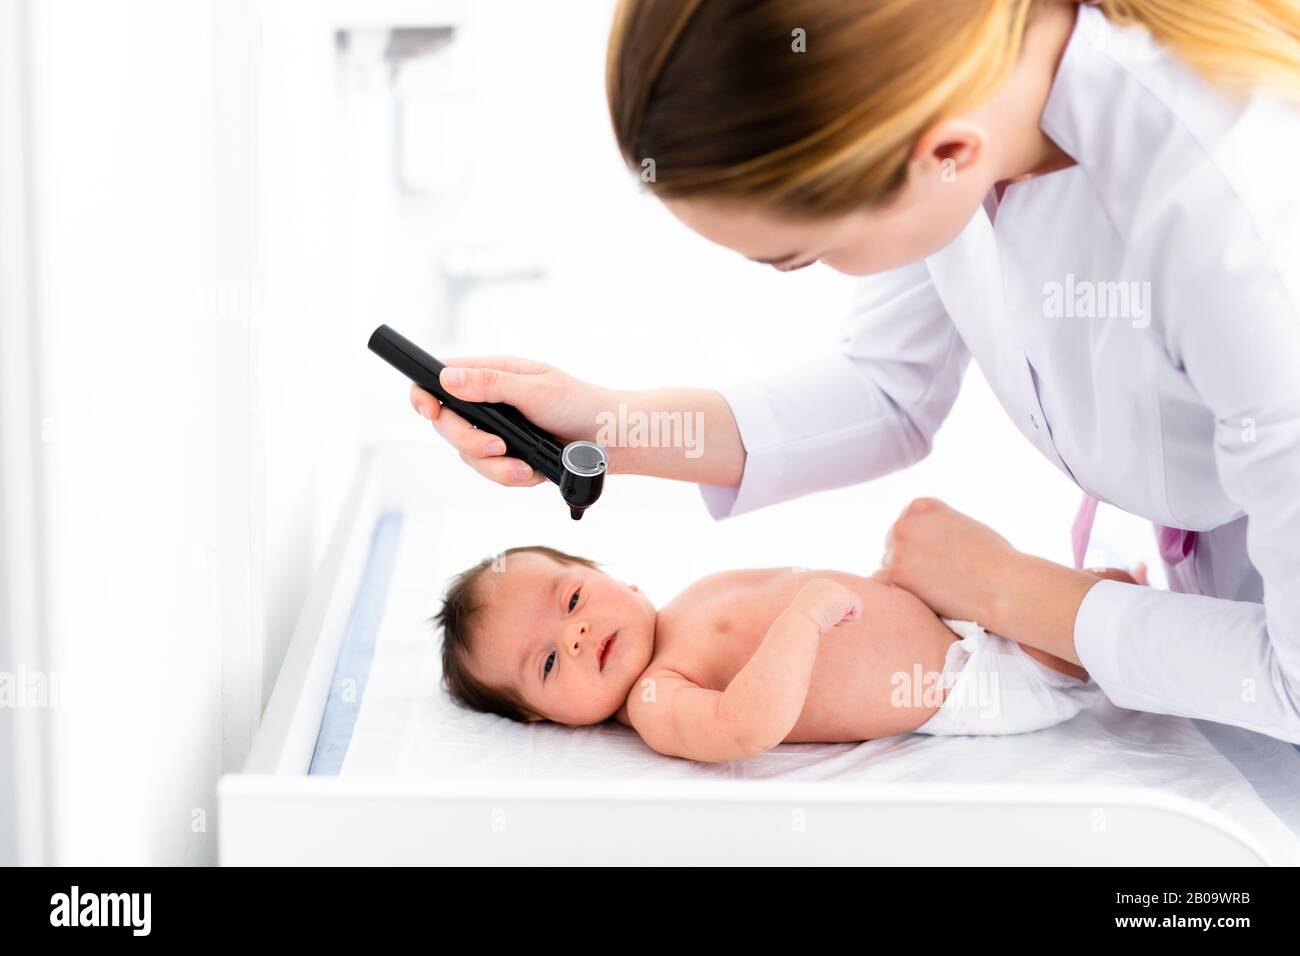 Der Kinderarzt untersucht das 2-wöchige Ohr des alten Babys in der neuen  pädiatrischen Klinik. Junger Arzt, der Otoskop (Auriskop) verwendet, um den  Gehörgang und die Trommelmembran zu überprüfen Stockfotografie - Alamy